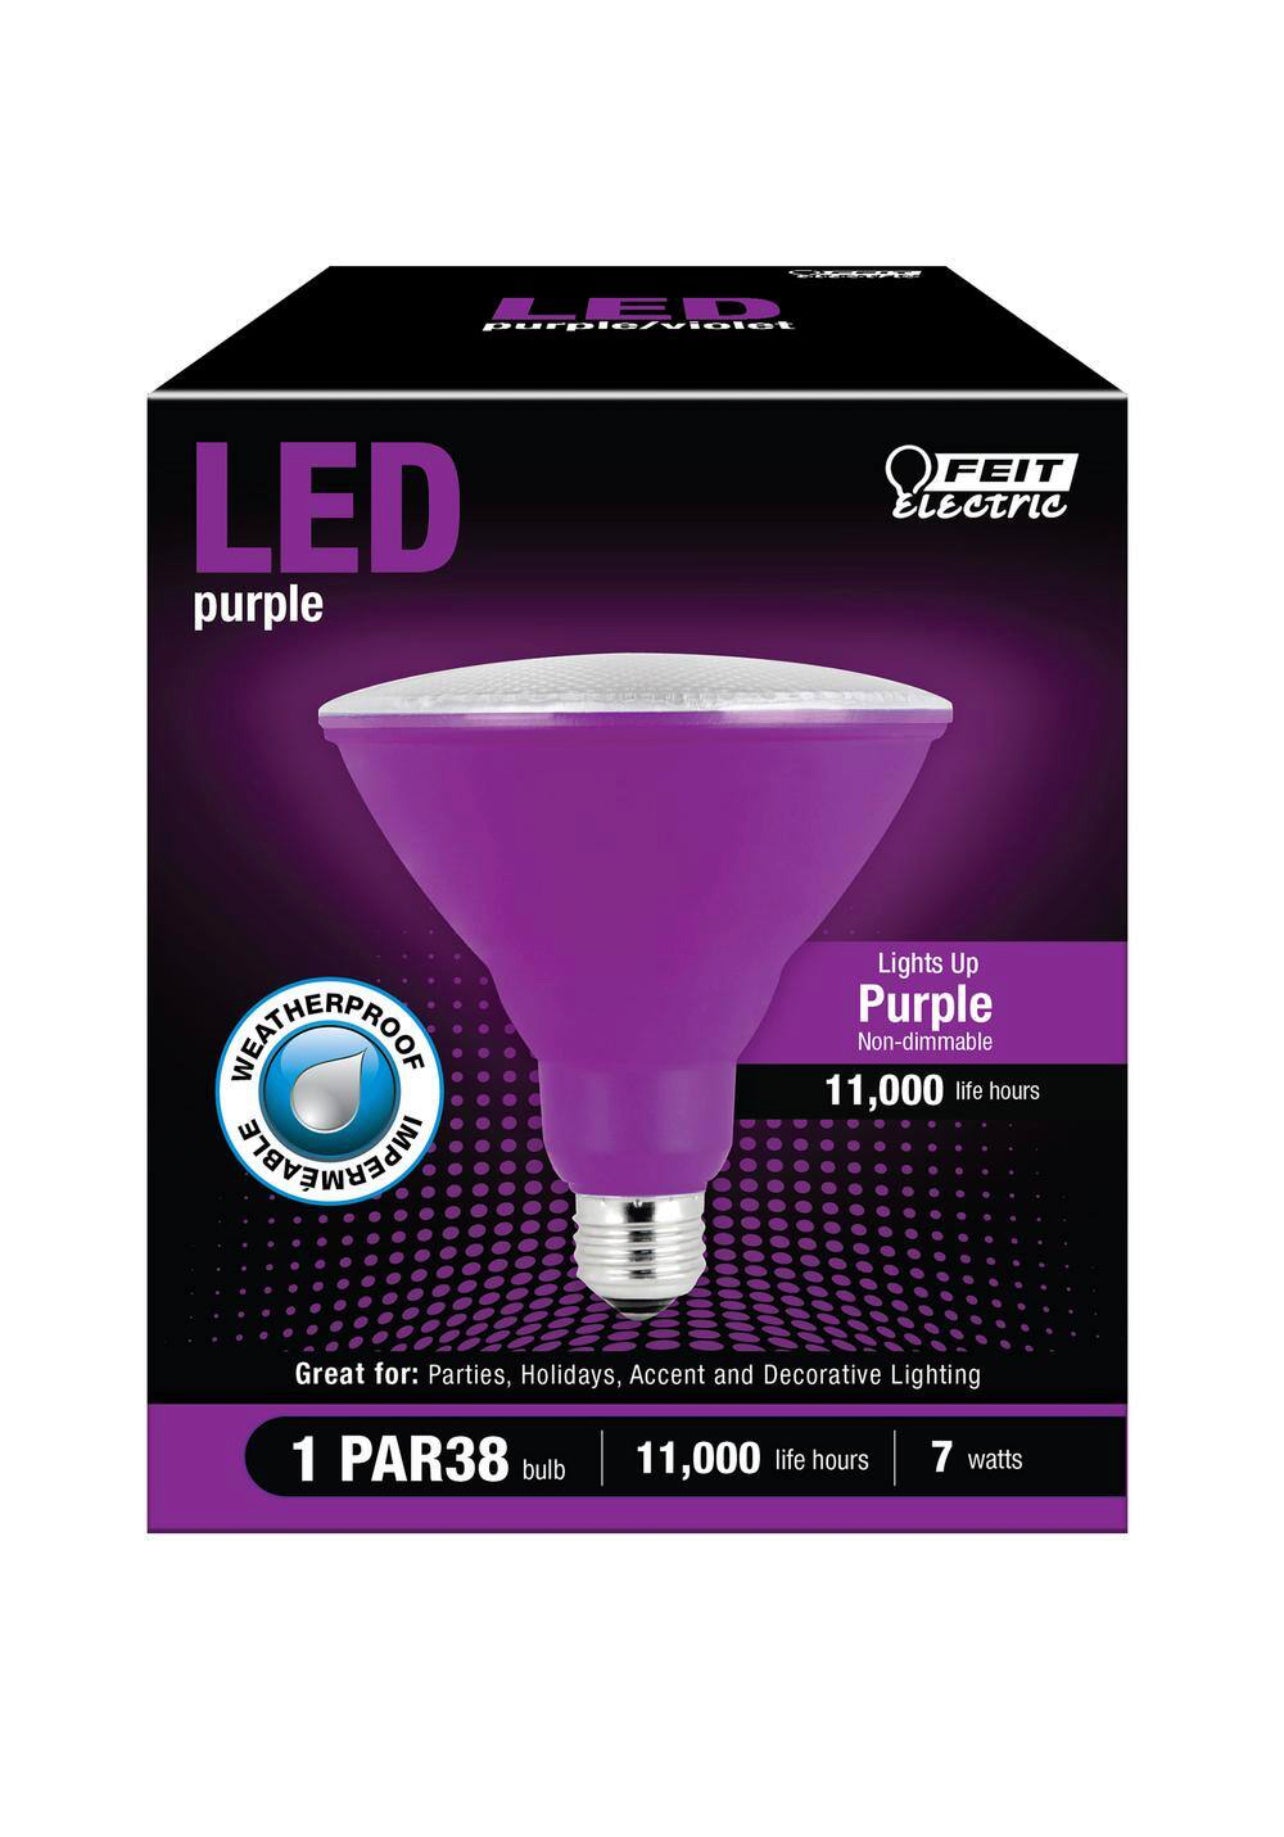 Feit Electric 90-Watt Equivalent PAR38 Weatherproof Outdoor Landscape Purple Color LED Flood Light Bulb (1-Bulb) Damaged Box